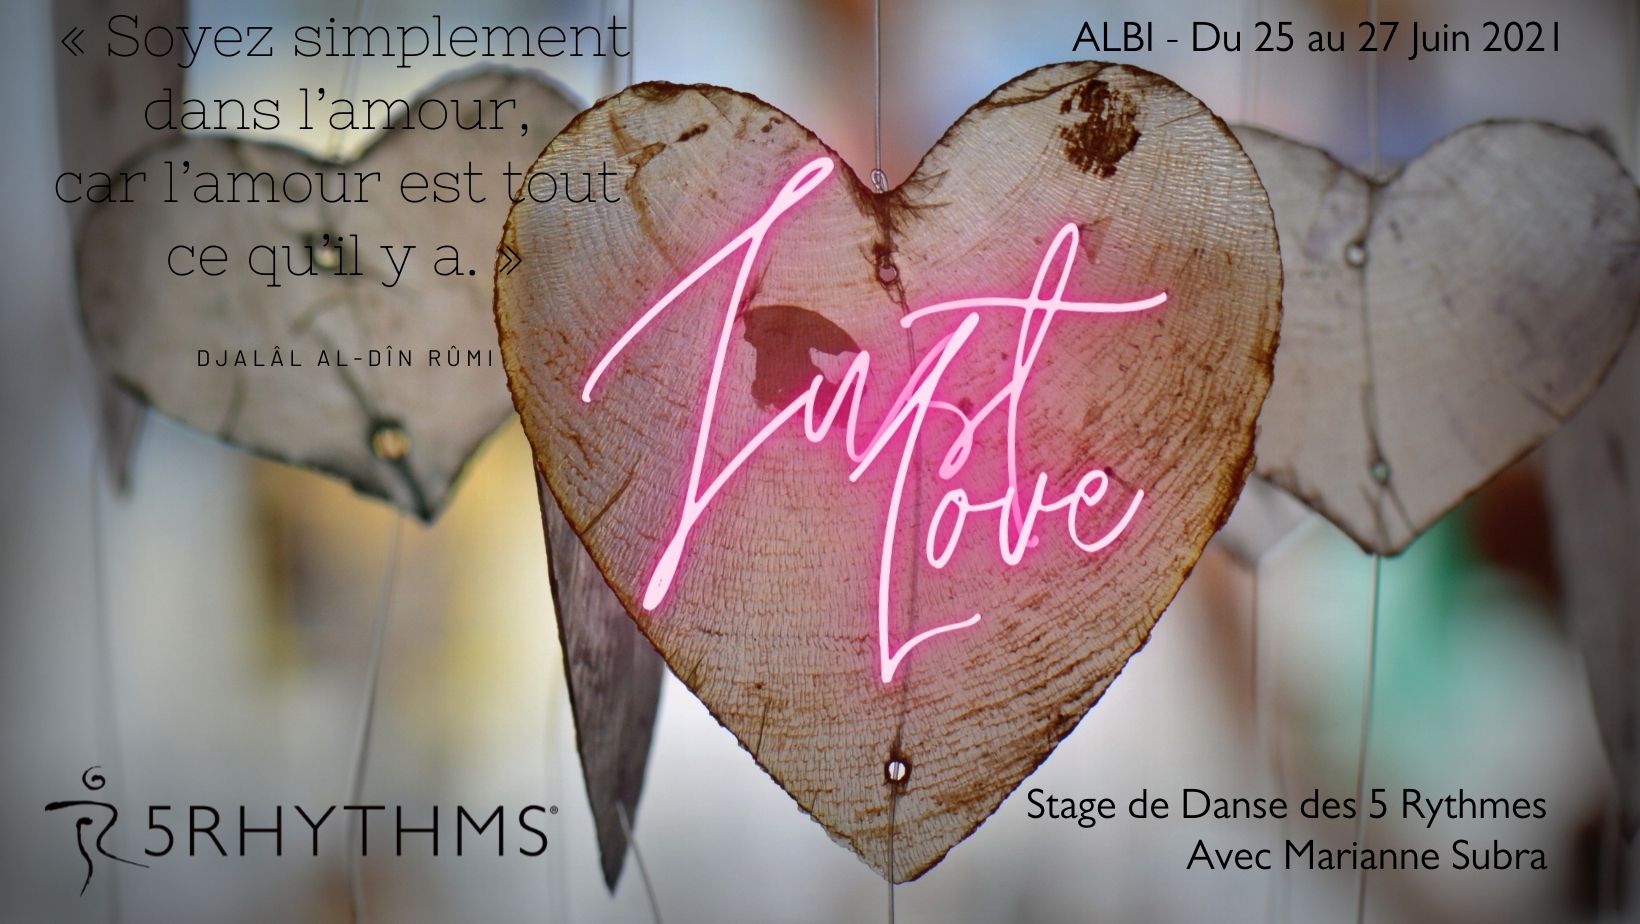 Just Love - stage de Danse des 5 Rythmes avec Marianne Subra à Alb